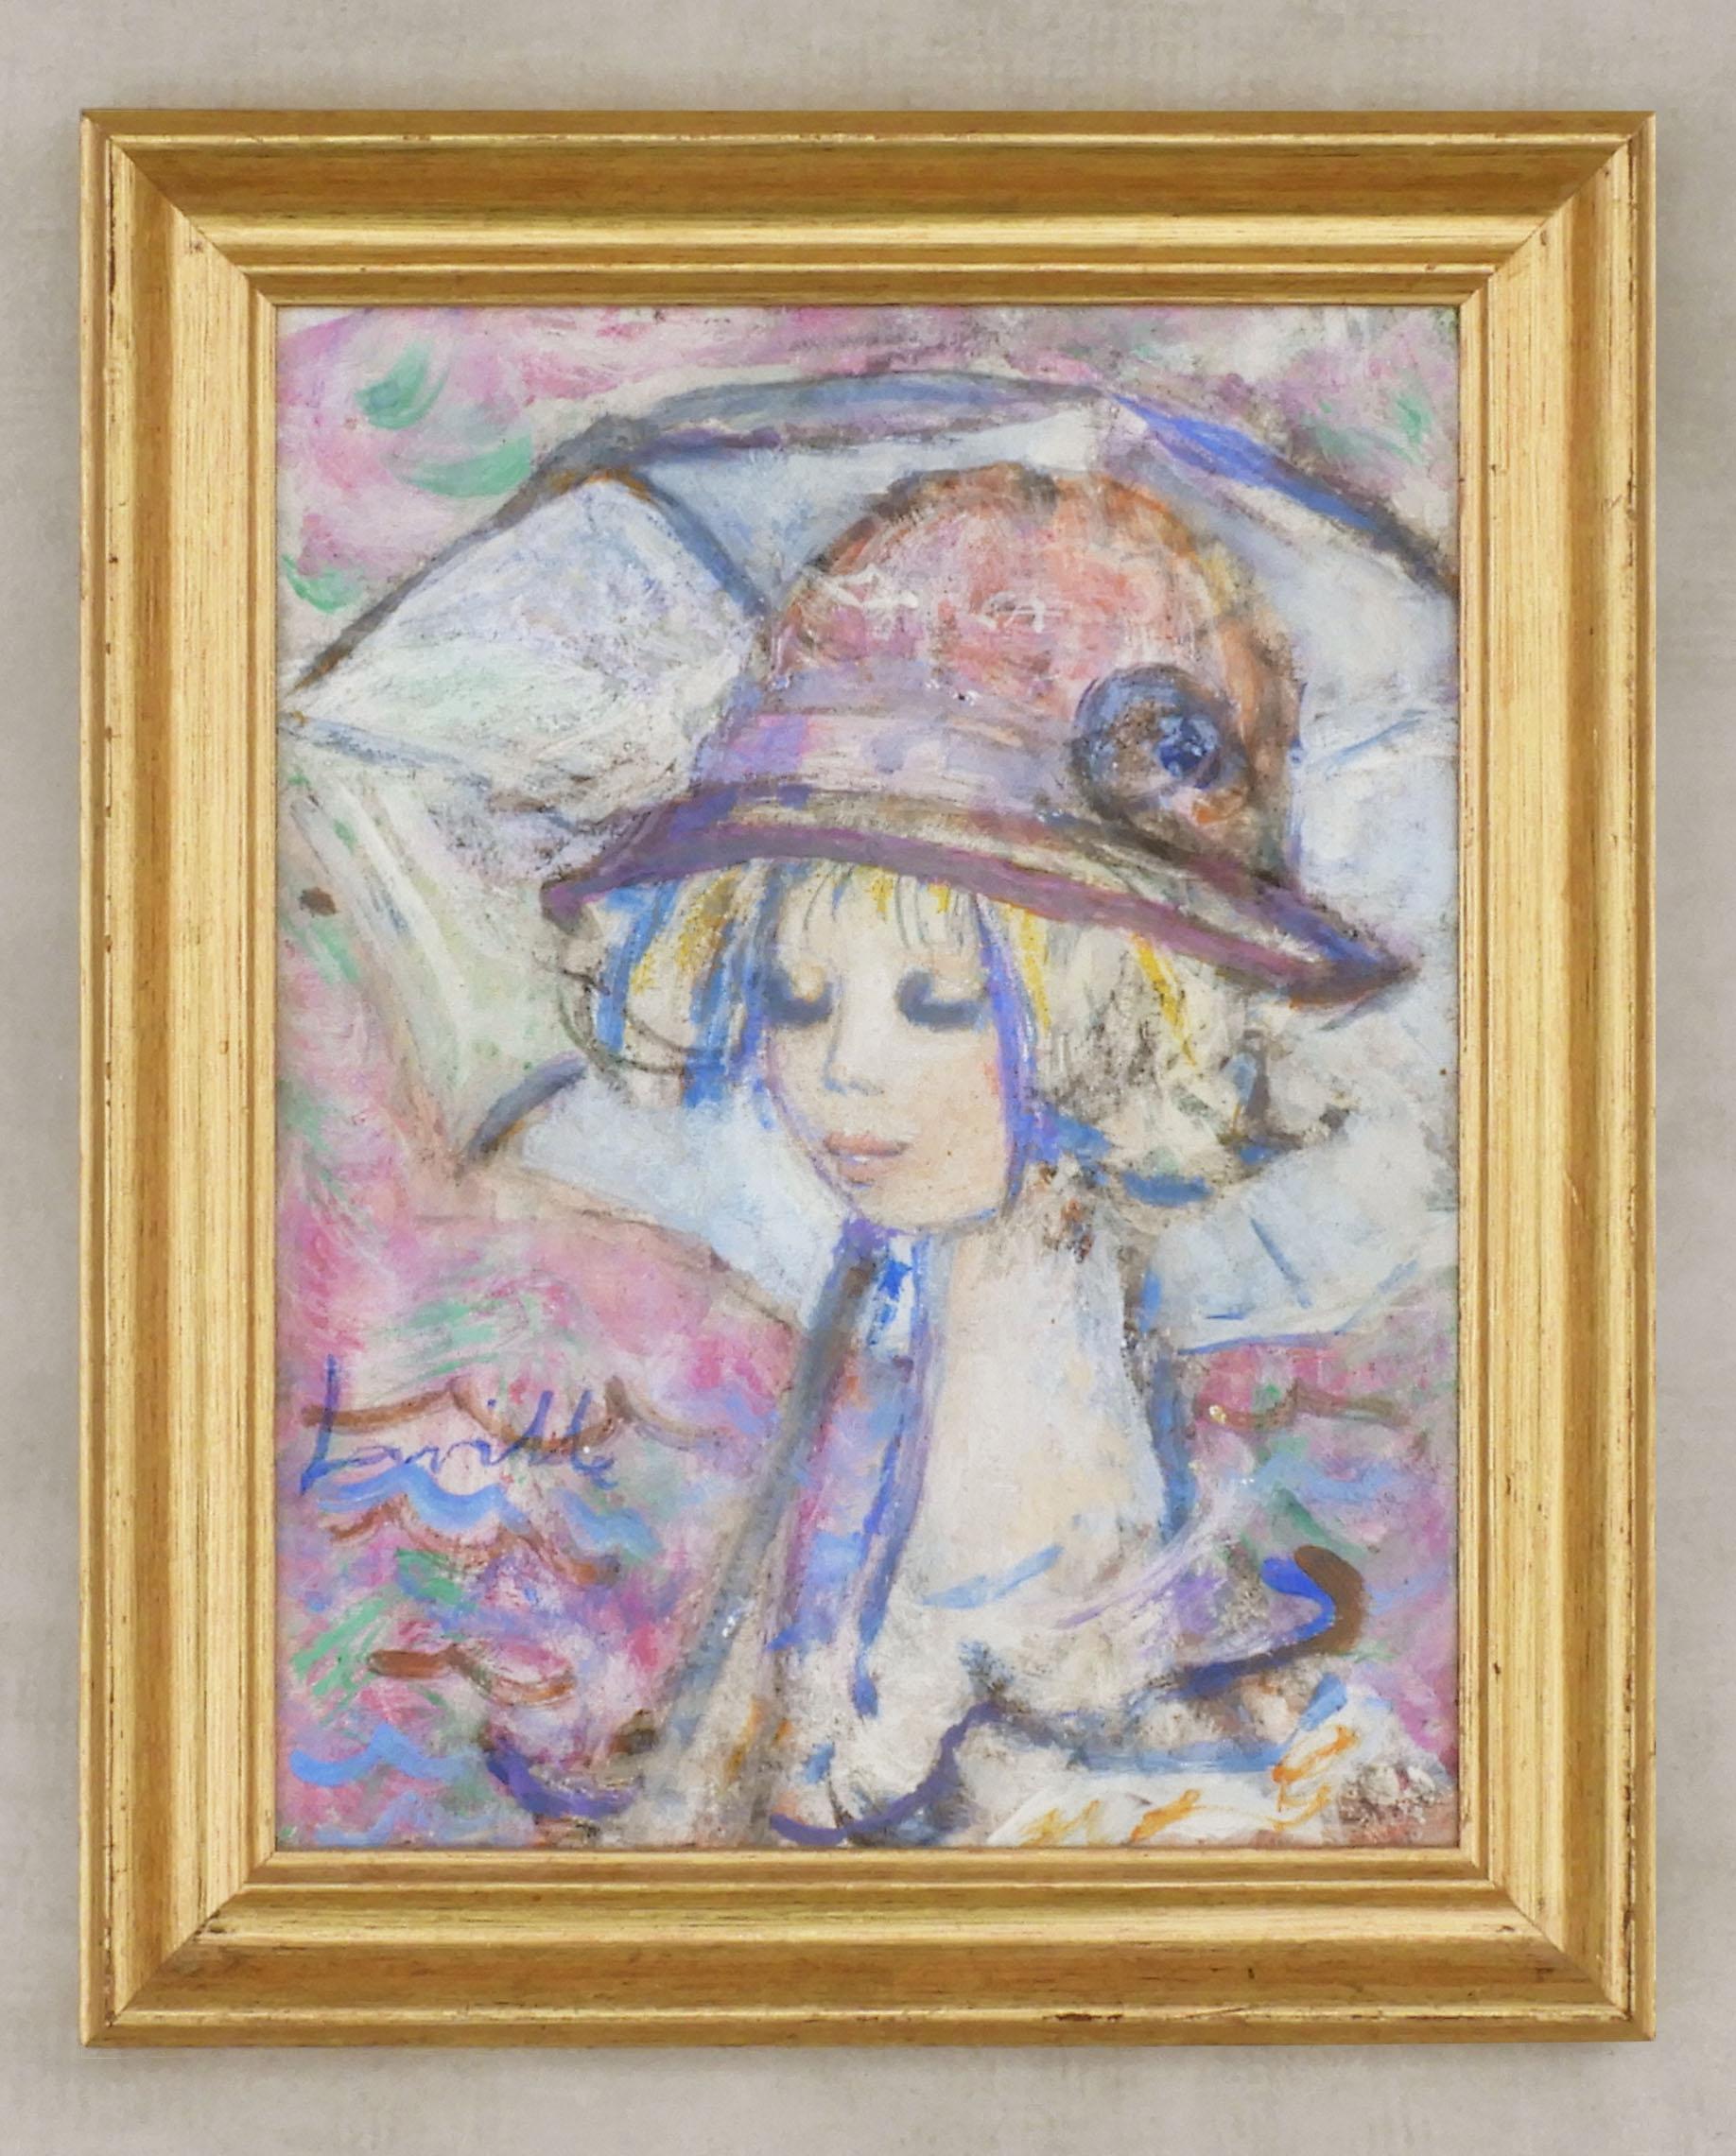 'Jeune Femme au Chapeau' Öl auf Leinwand von Henri Laville um 1960 Frankreich


Wunderschönes Porträt einer jungen Frau im Regen von Henri Laville.

Charmantes, gut ausgeführtes Gemälde dieses berühmten französischen Künstlers.

Signiert und